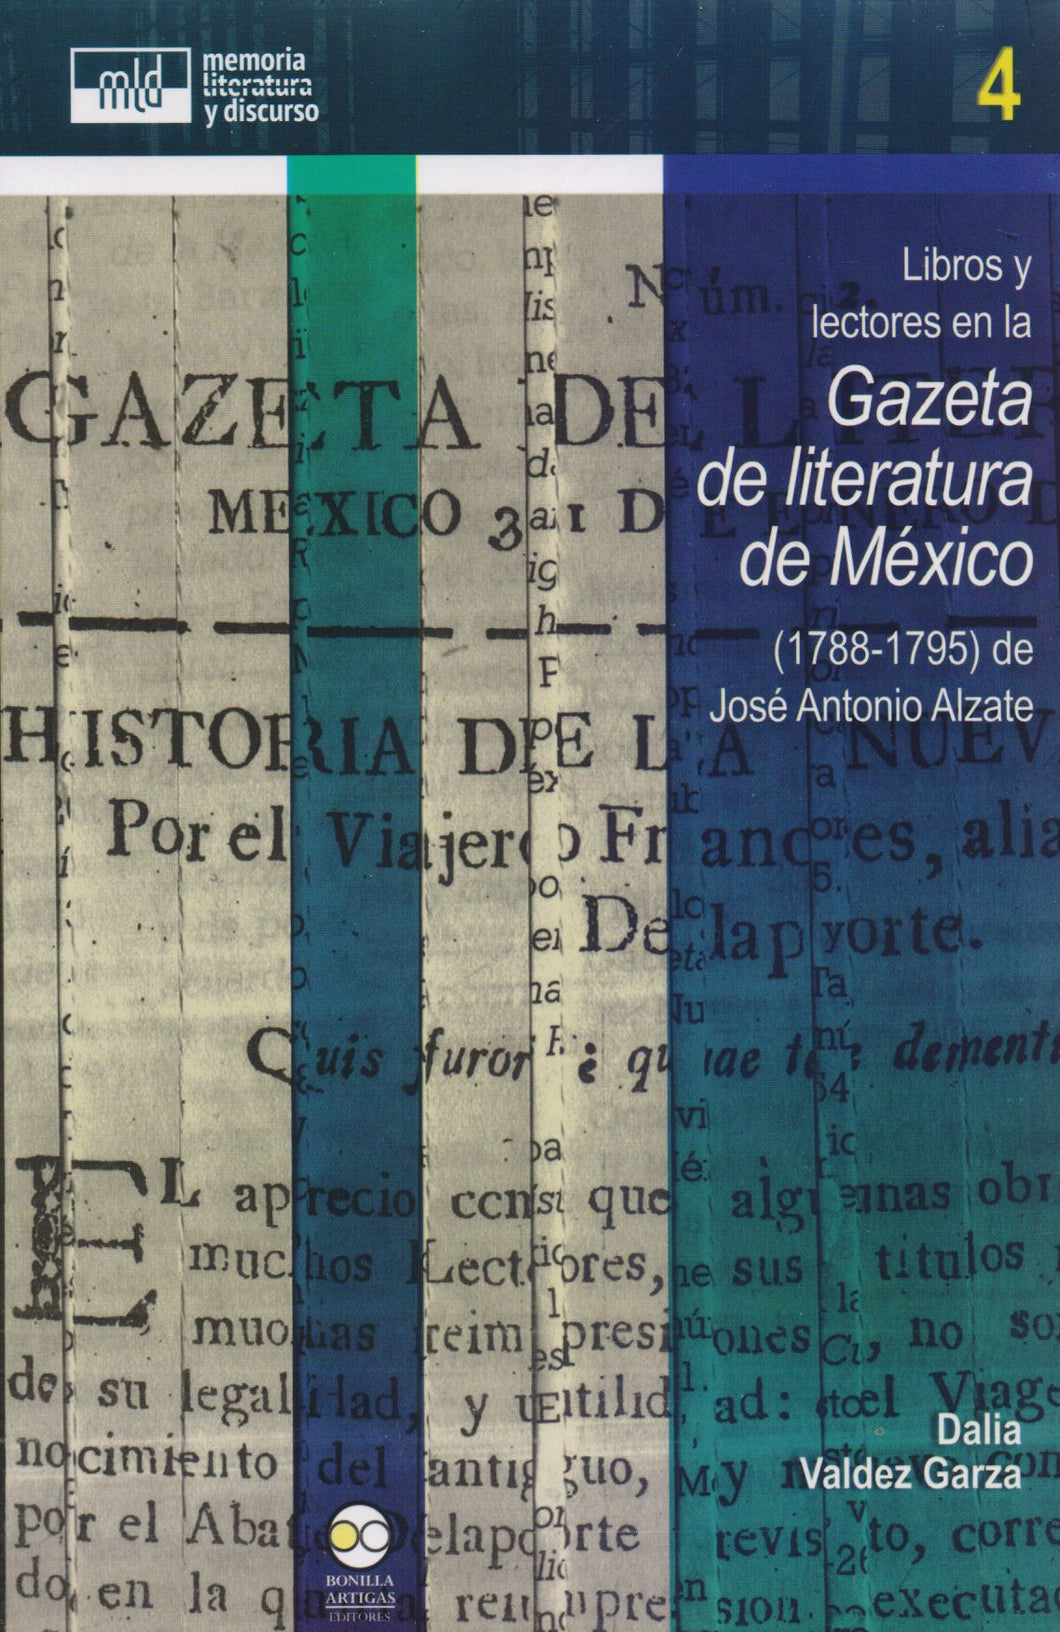 Libros y lectores en la Gazeta de literatura de México (1788-1795) de José Antonio Alzate. - Dalia Valdez Garza